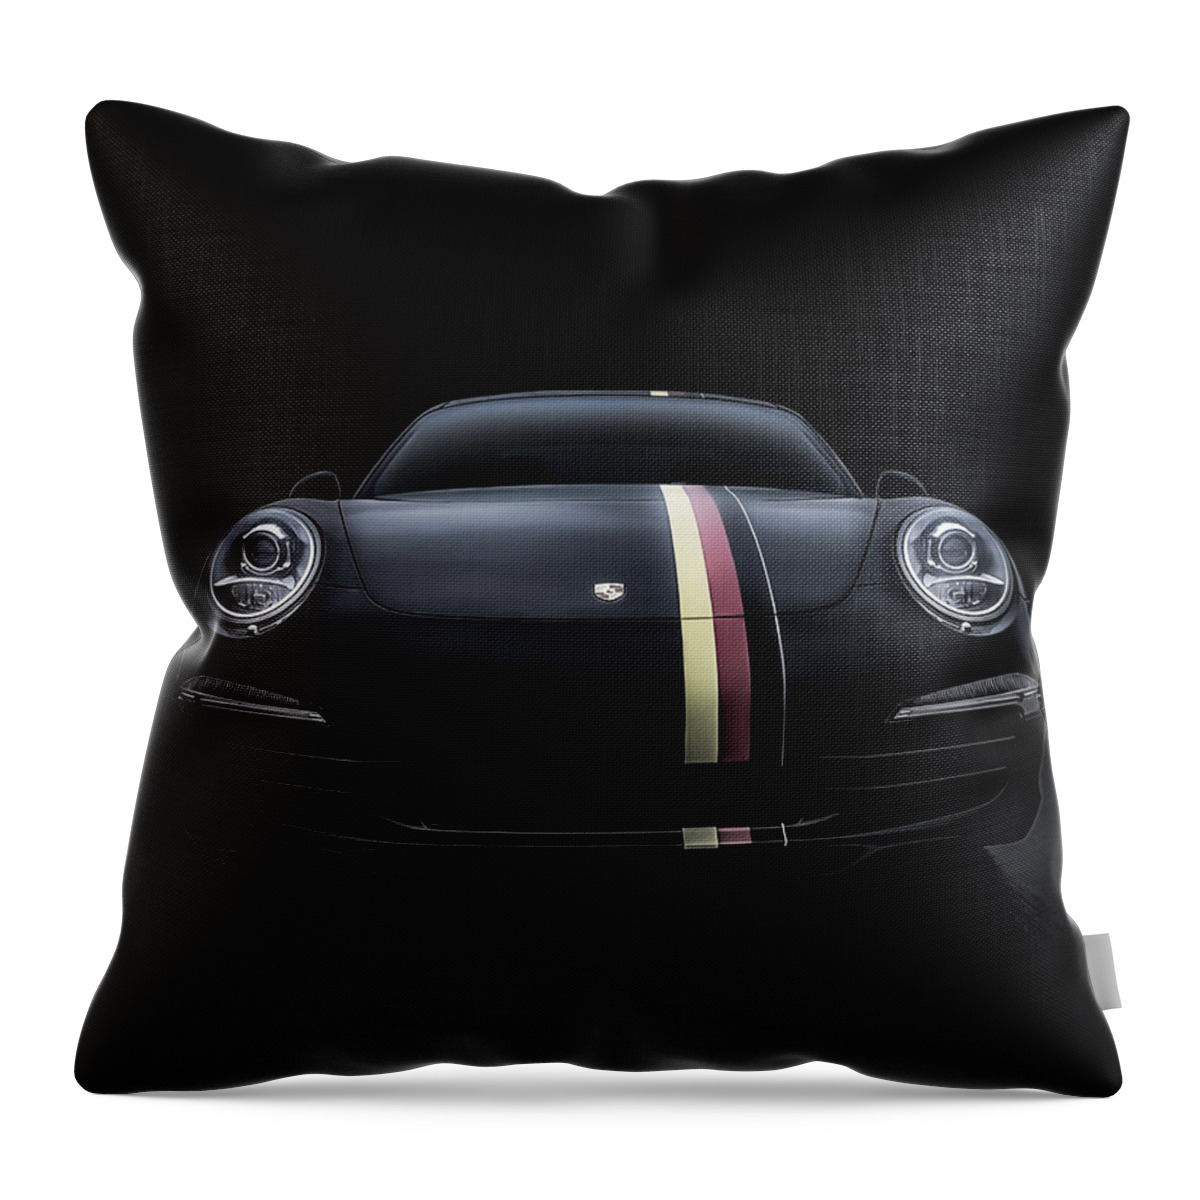 Porsche Throw Pillow featuring the digital art Black Porsche 911 by Douglas Pittman